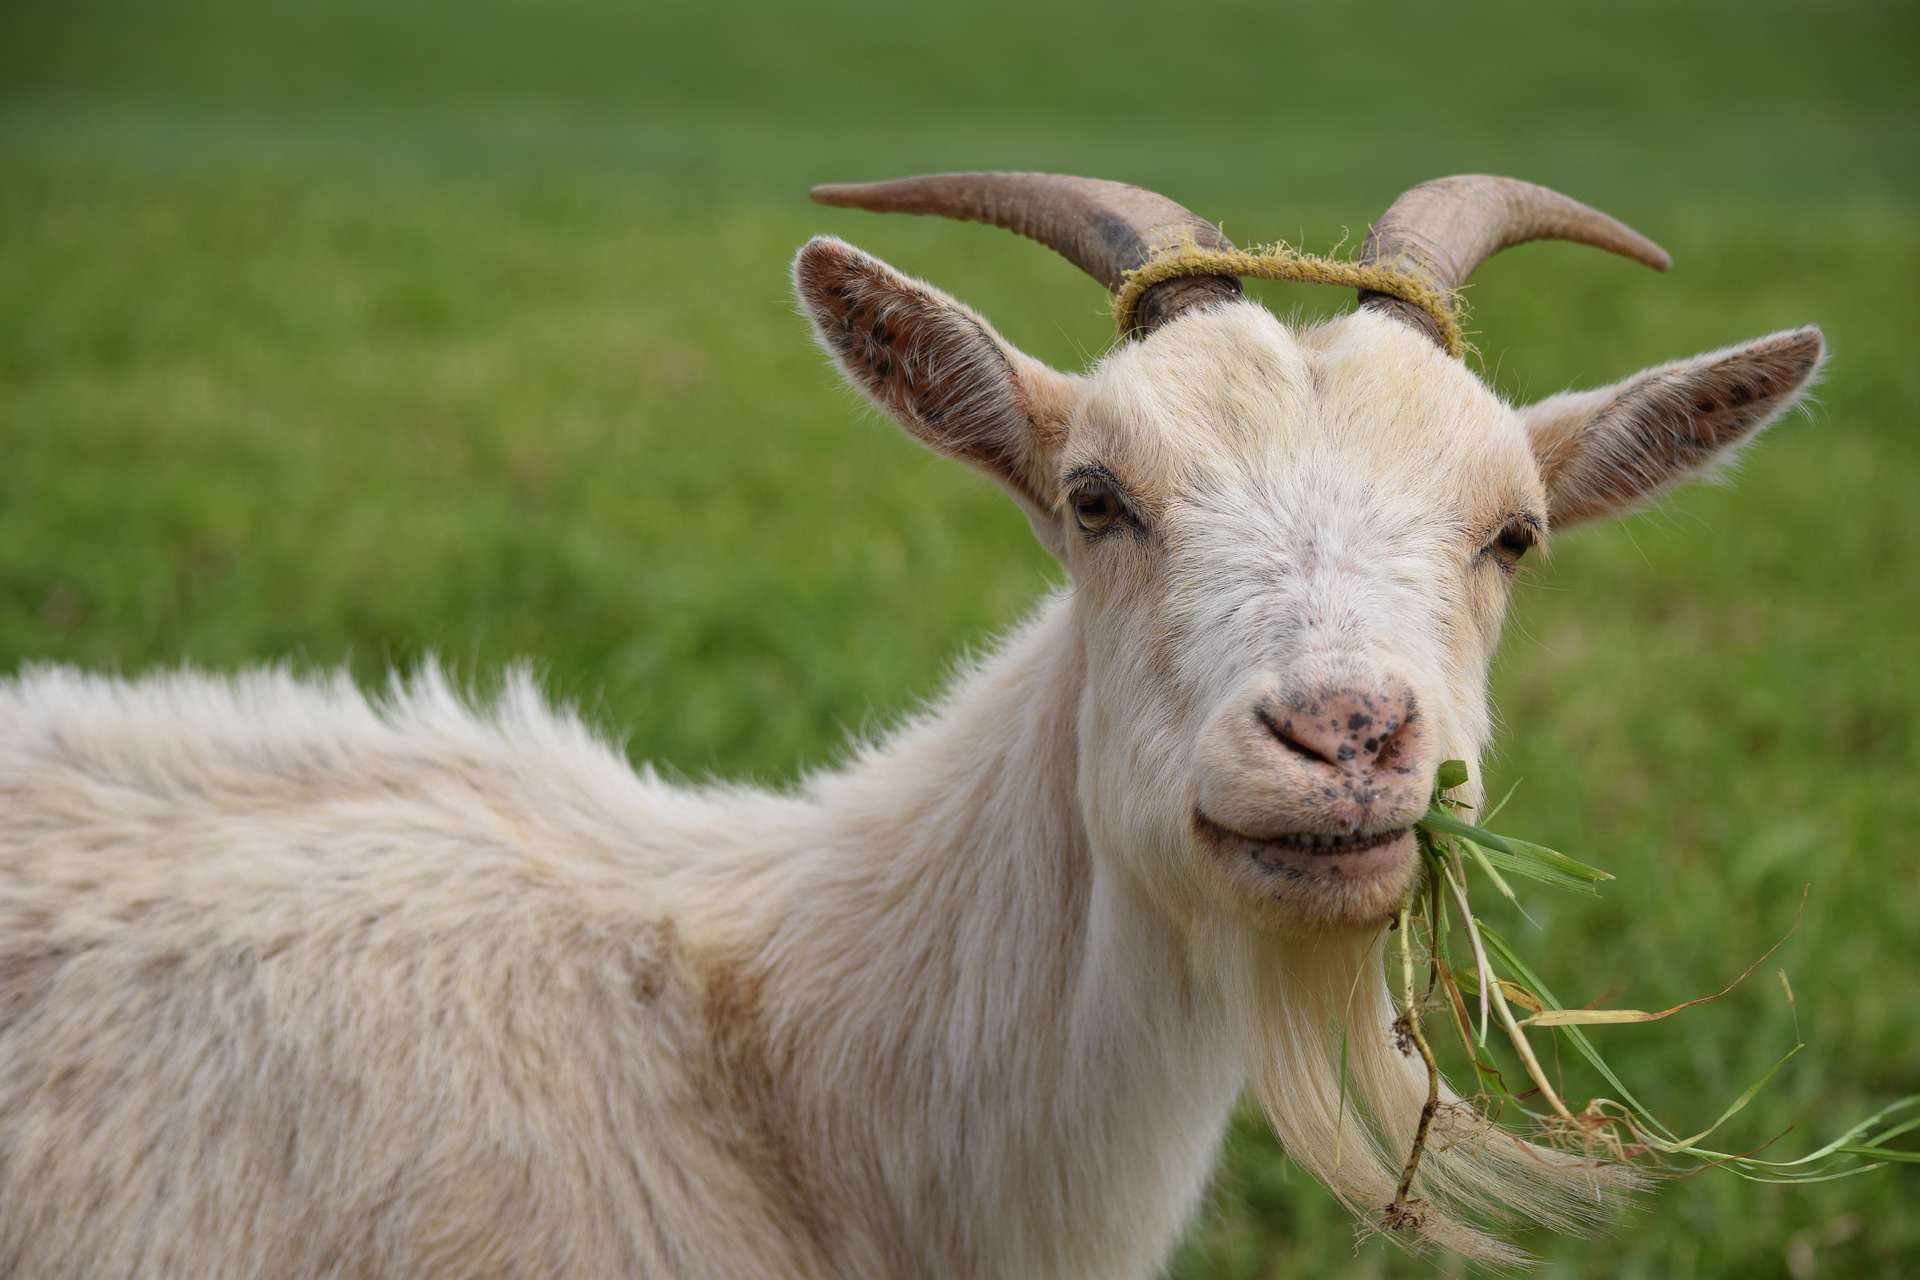 Goat eating